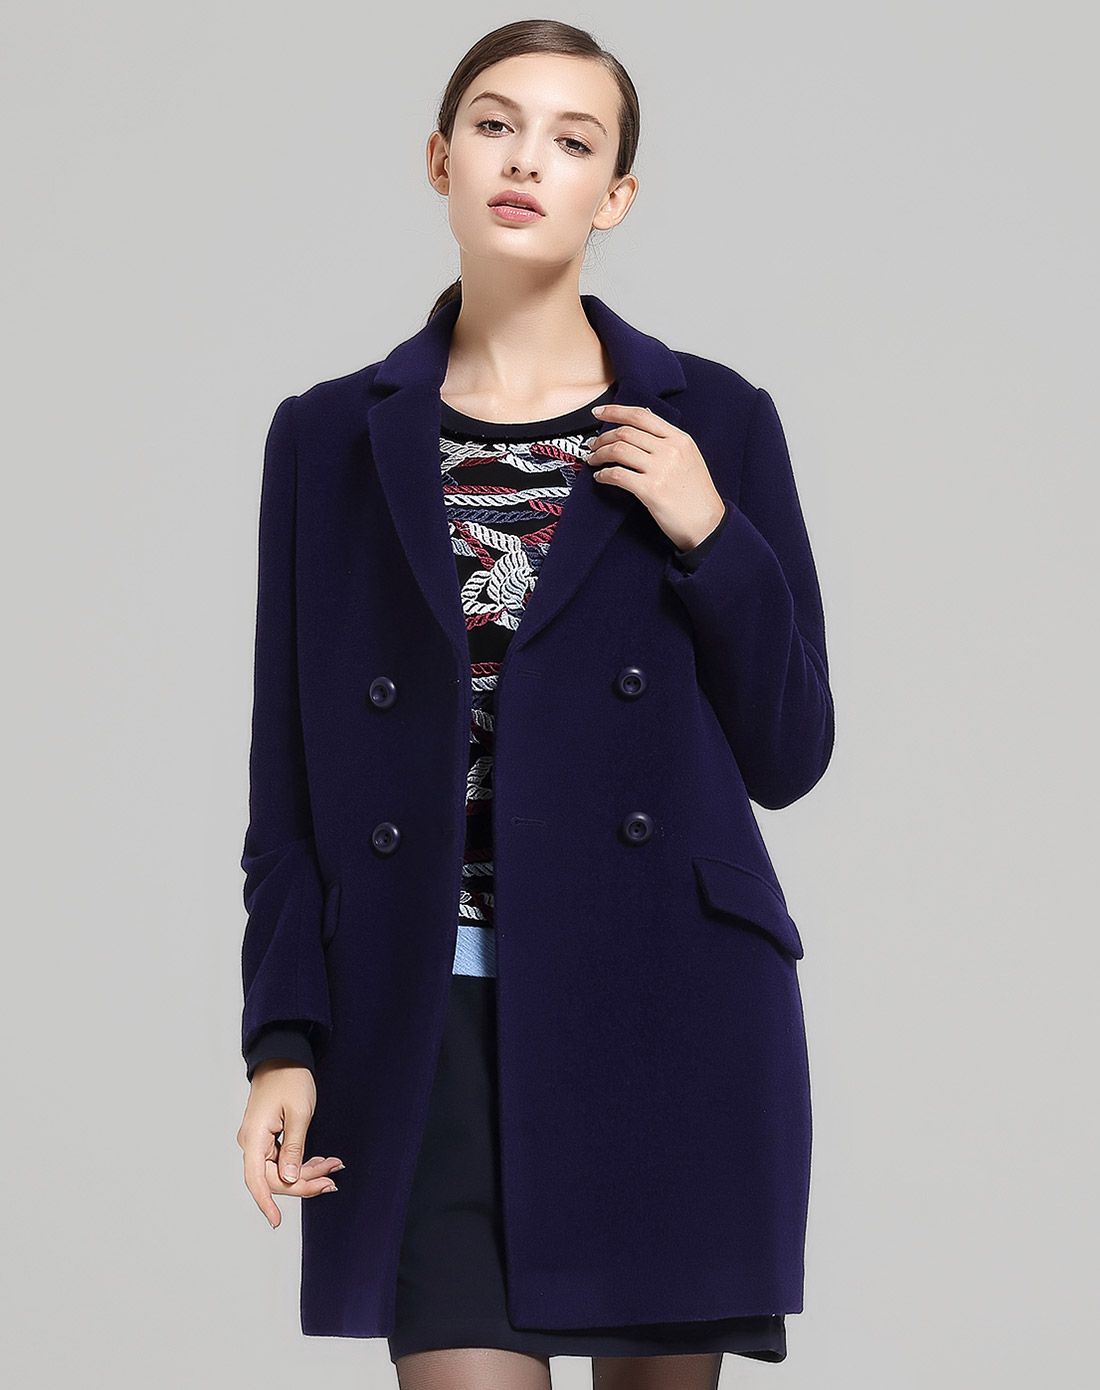 蕾朵liedow女装专场 紫蓝色唯美双排扣长袖中长款大衣